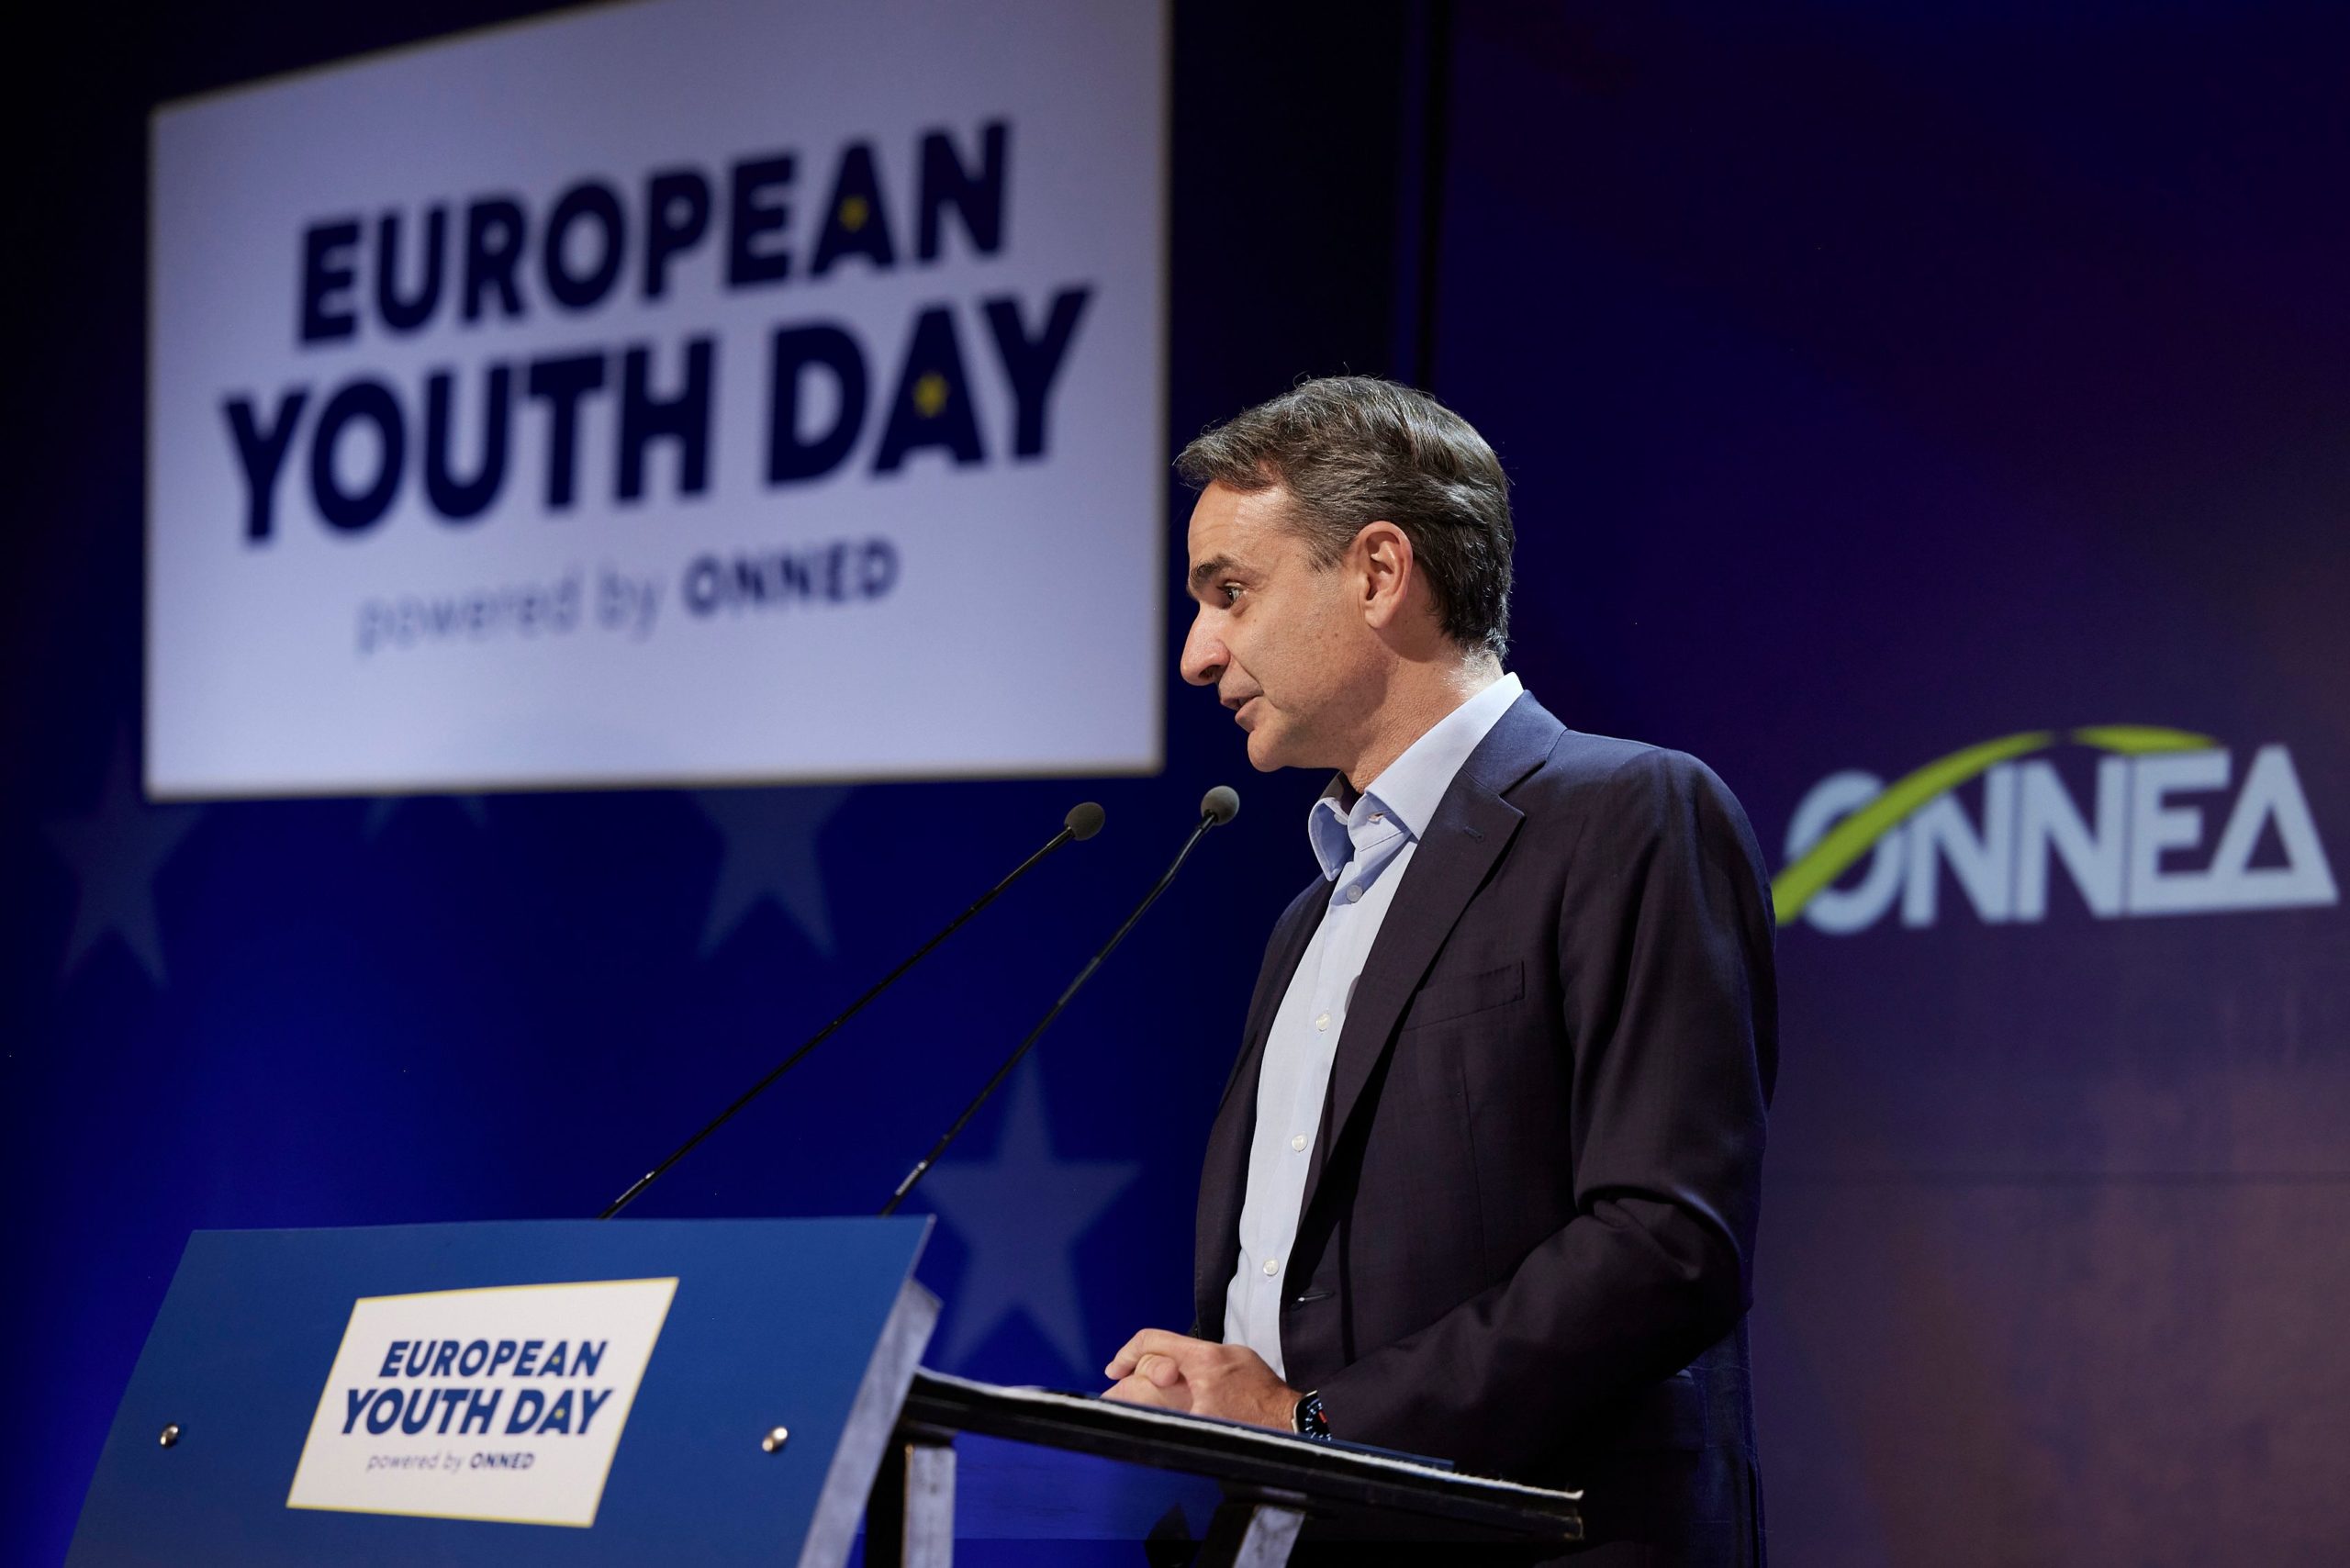 Κ. Μητσοτάκης στην «European Youth Day»: Η Ελλάδα καινοτόμησε και σε ευρωπαϊκό επίπεδο (video)